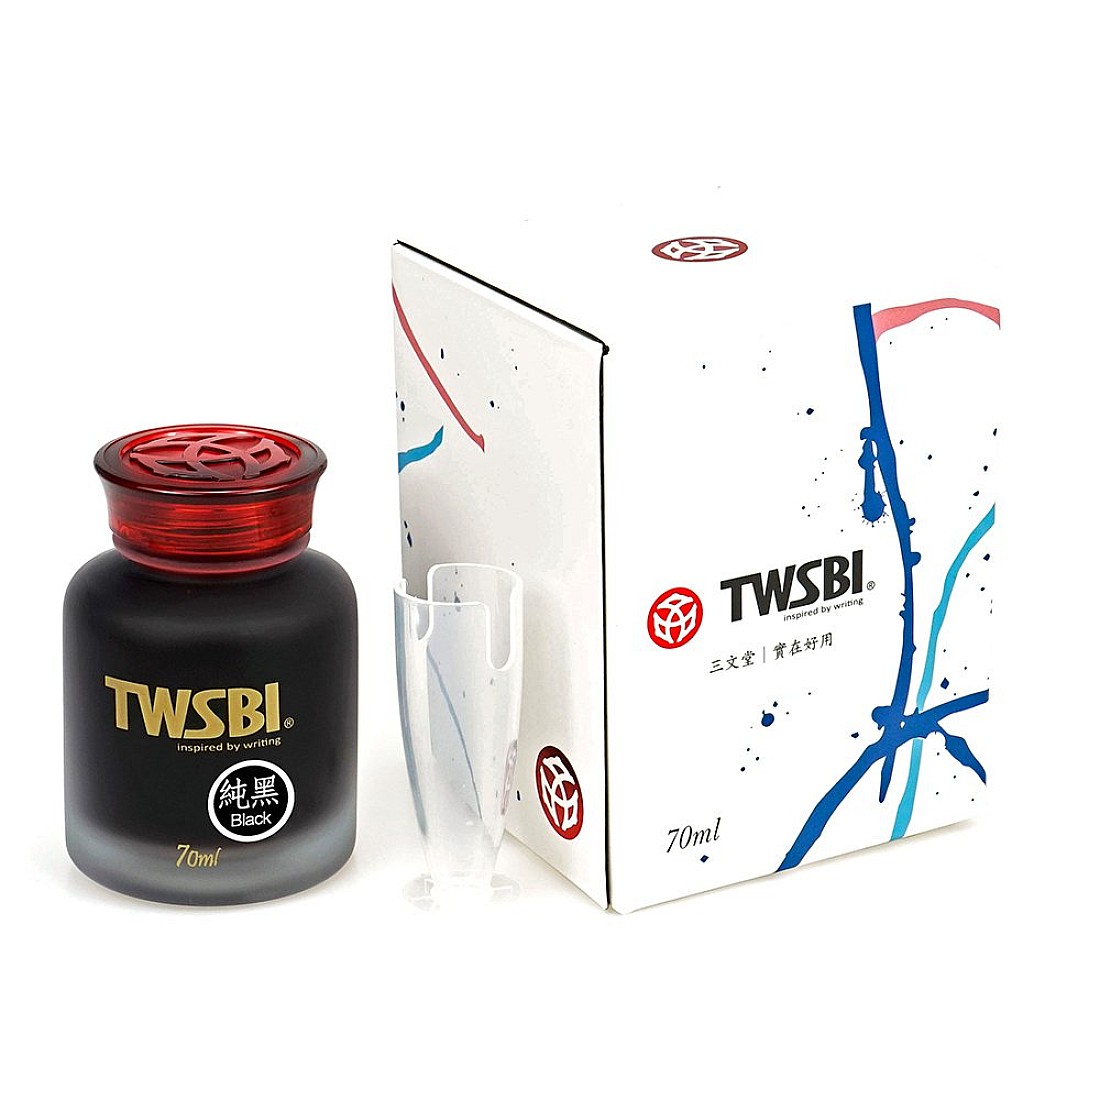 TWSBI 70ml Ink Bottle - Black